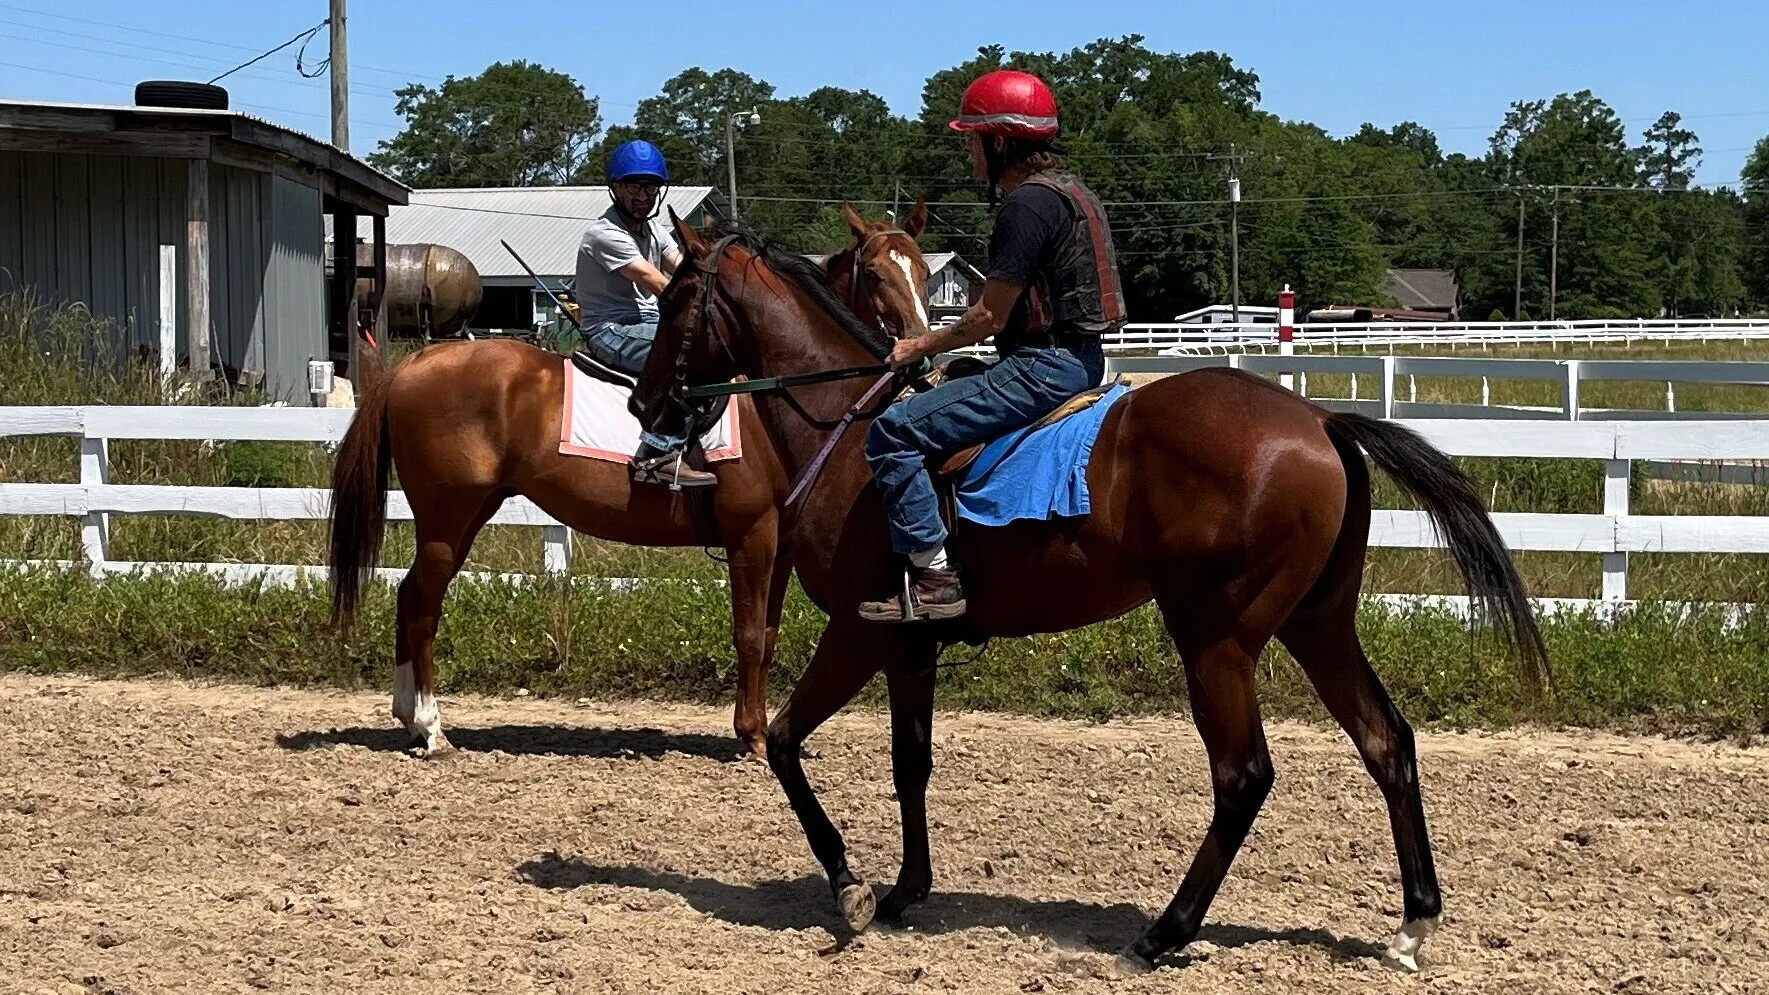 Imagen de dos jinetes en una pista de entrenamiento ejercitando caballos.